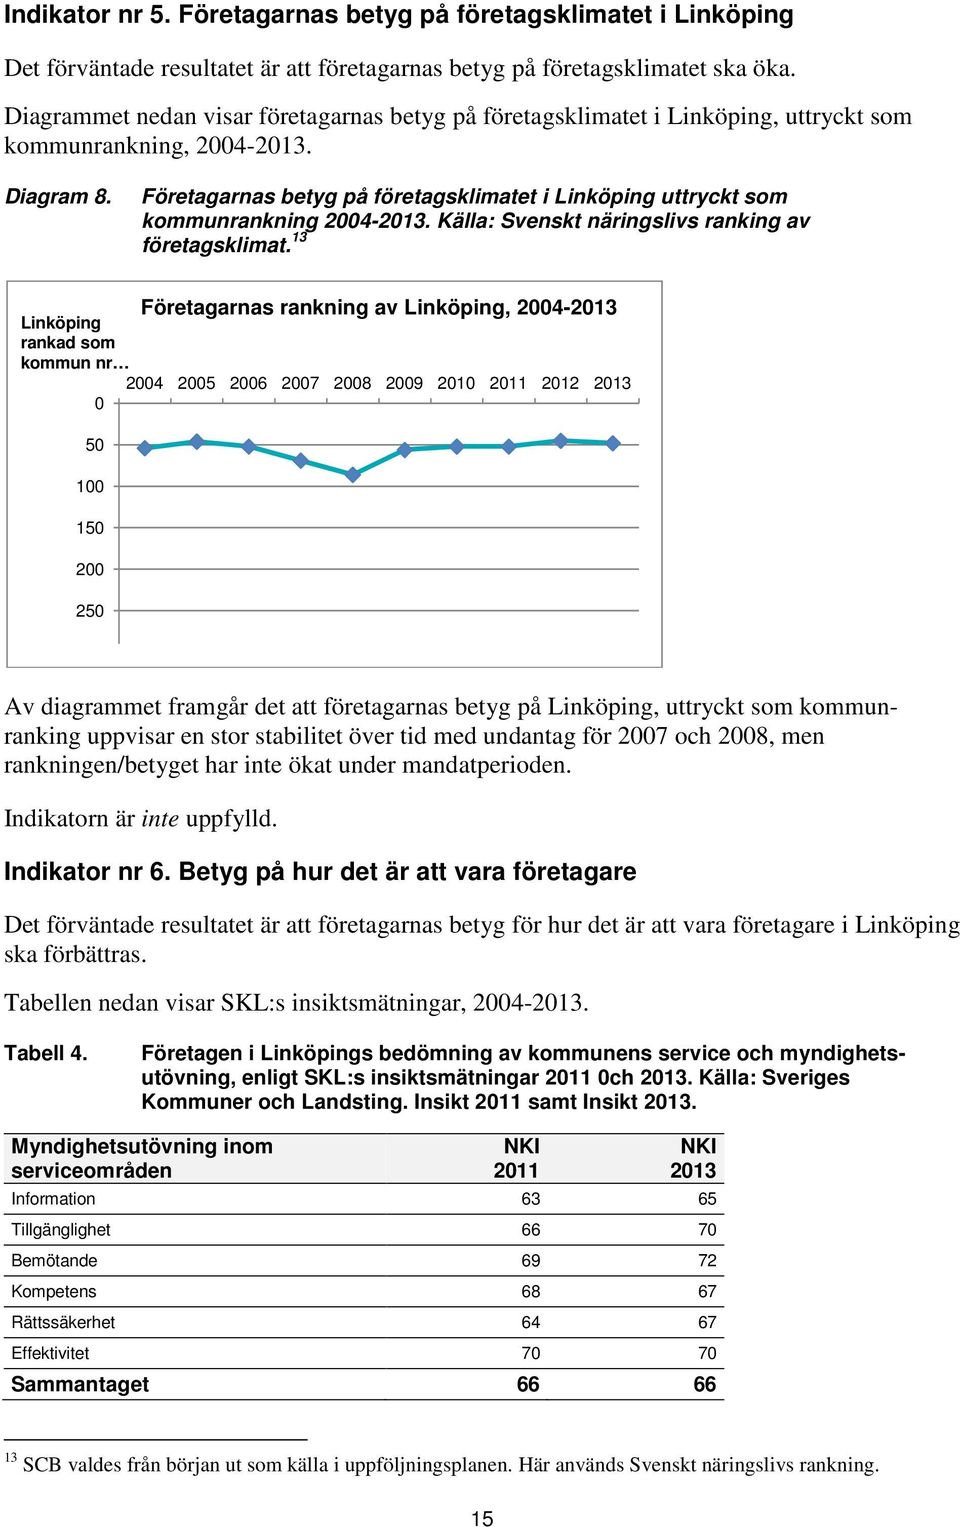 Företagarnas betyg på företagsklimatet i Linköping uttryckt som kommunrankning 2004-2013. Källa: Svenskt näringslivs ranking av företagsklimat.